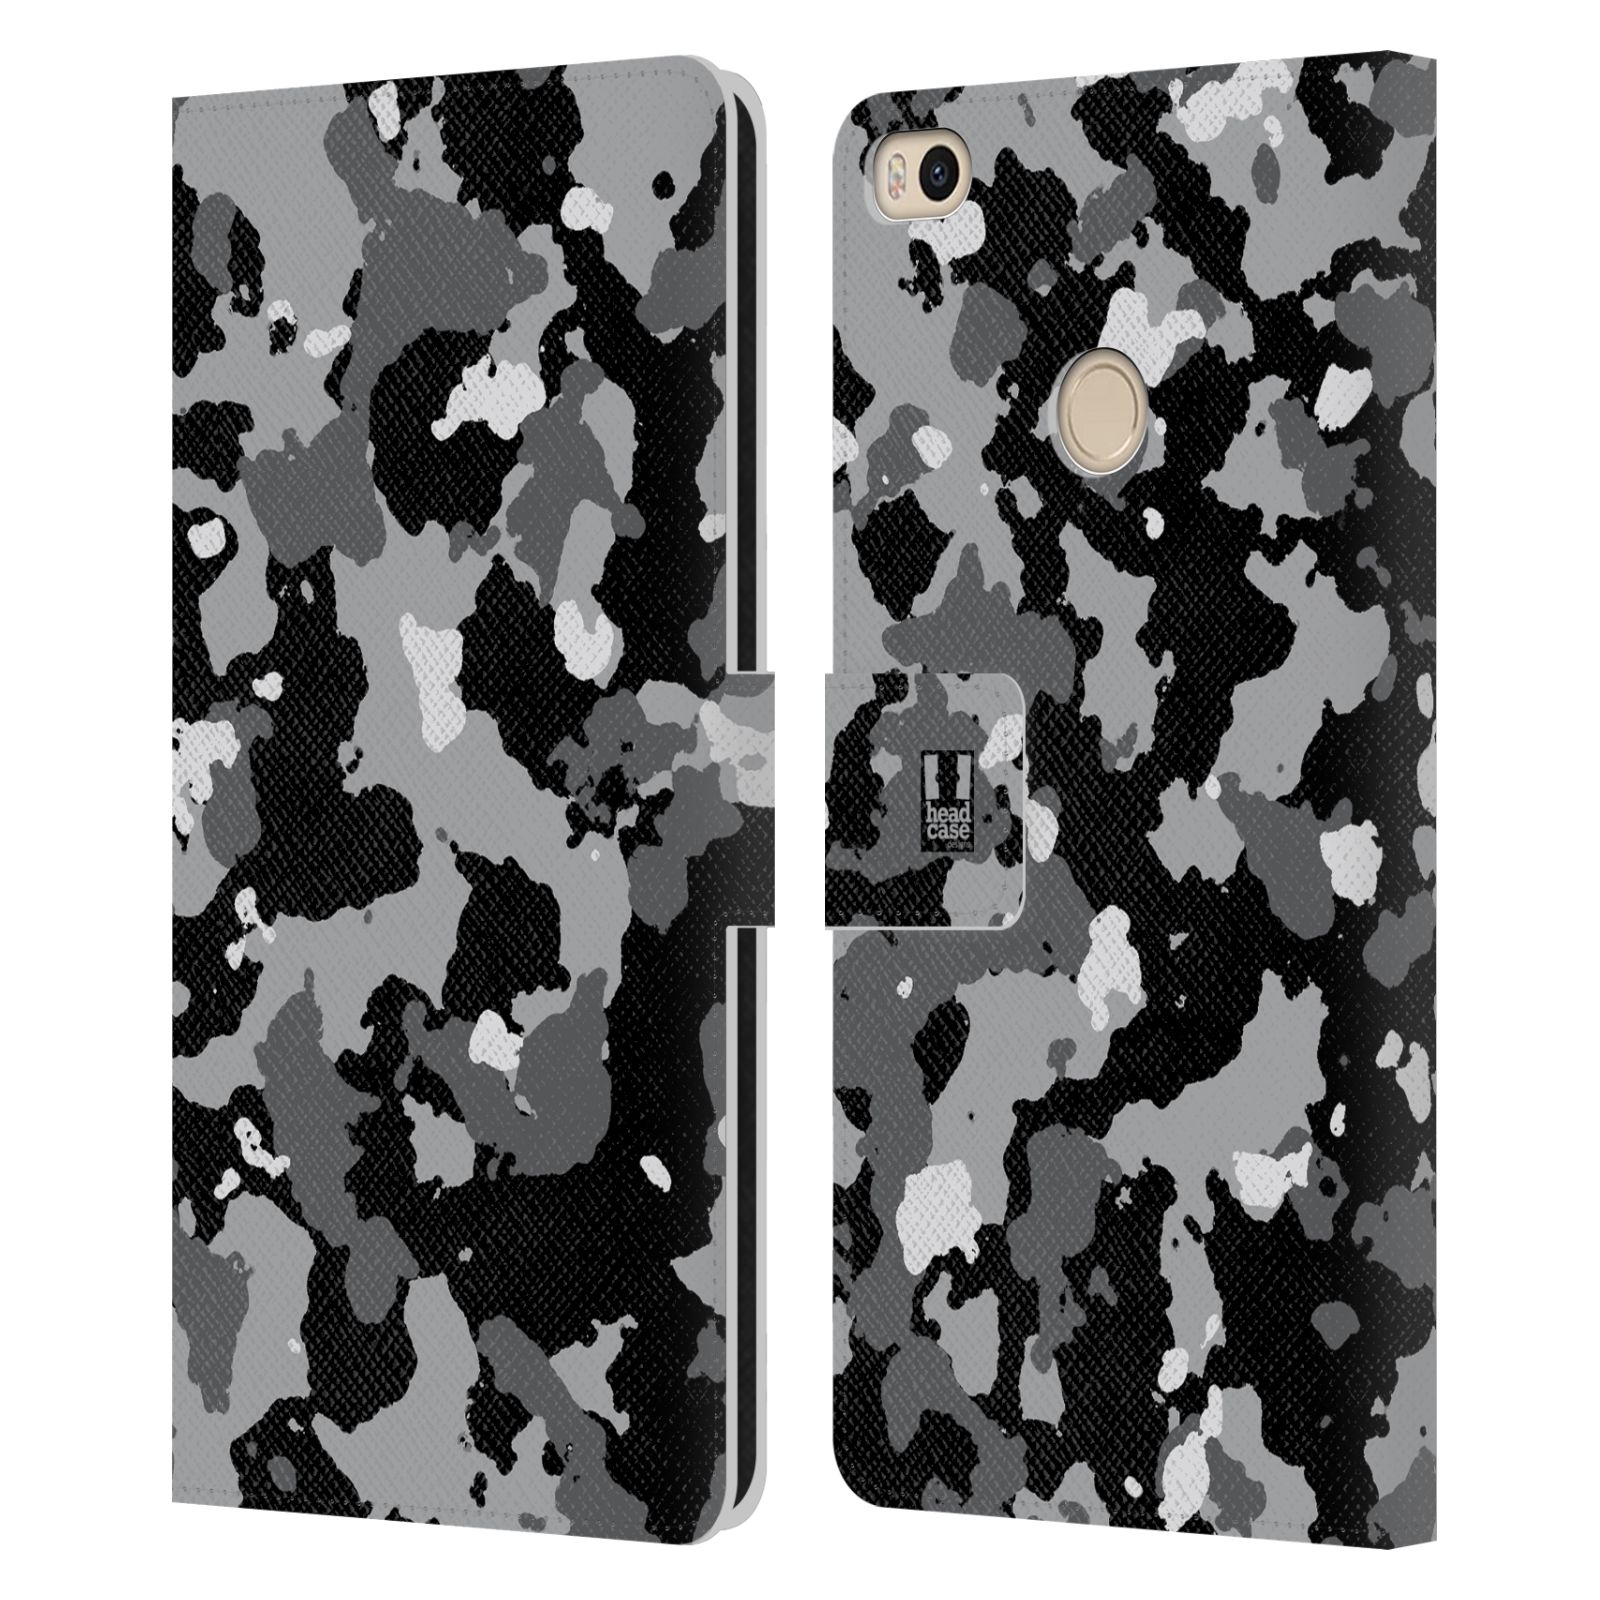 Pouzdro na mobil Xiaomi Mi Max 2 - Head Case - kamuflaž černá a šedá